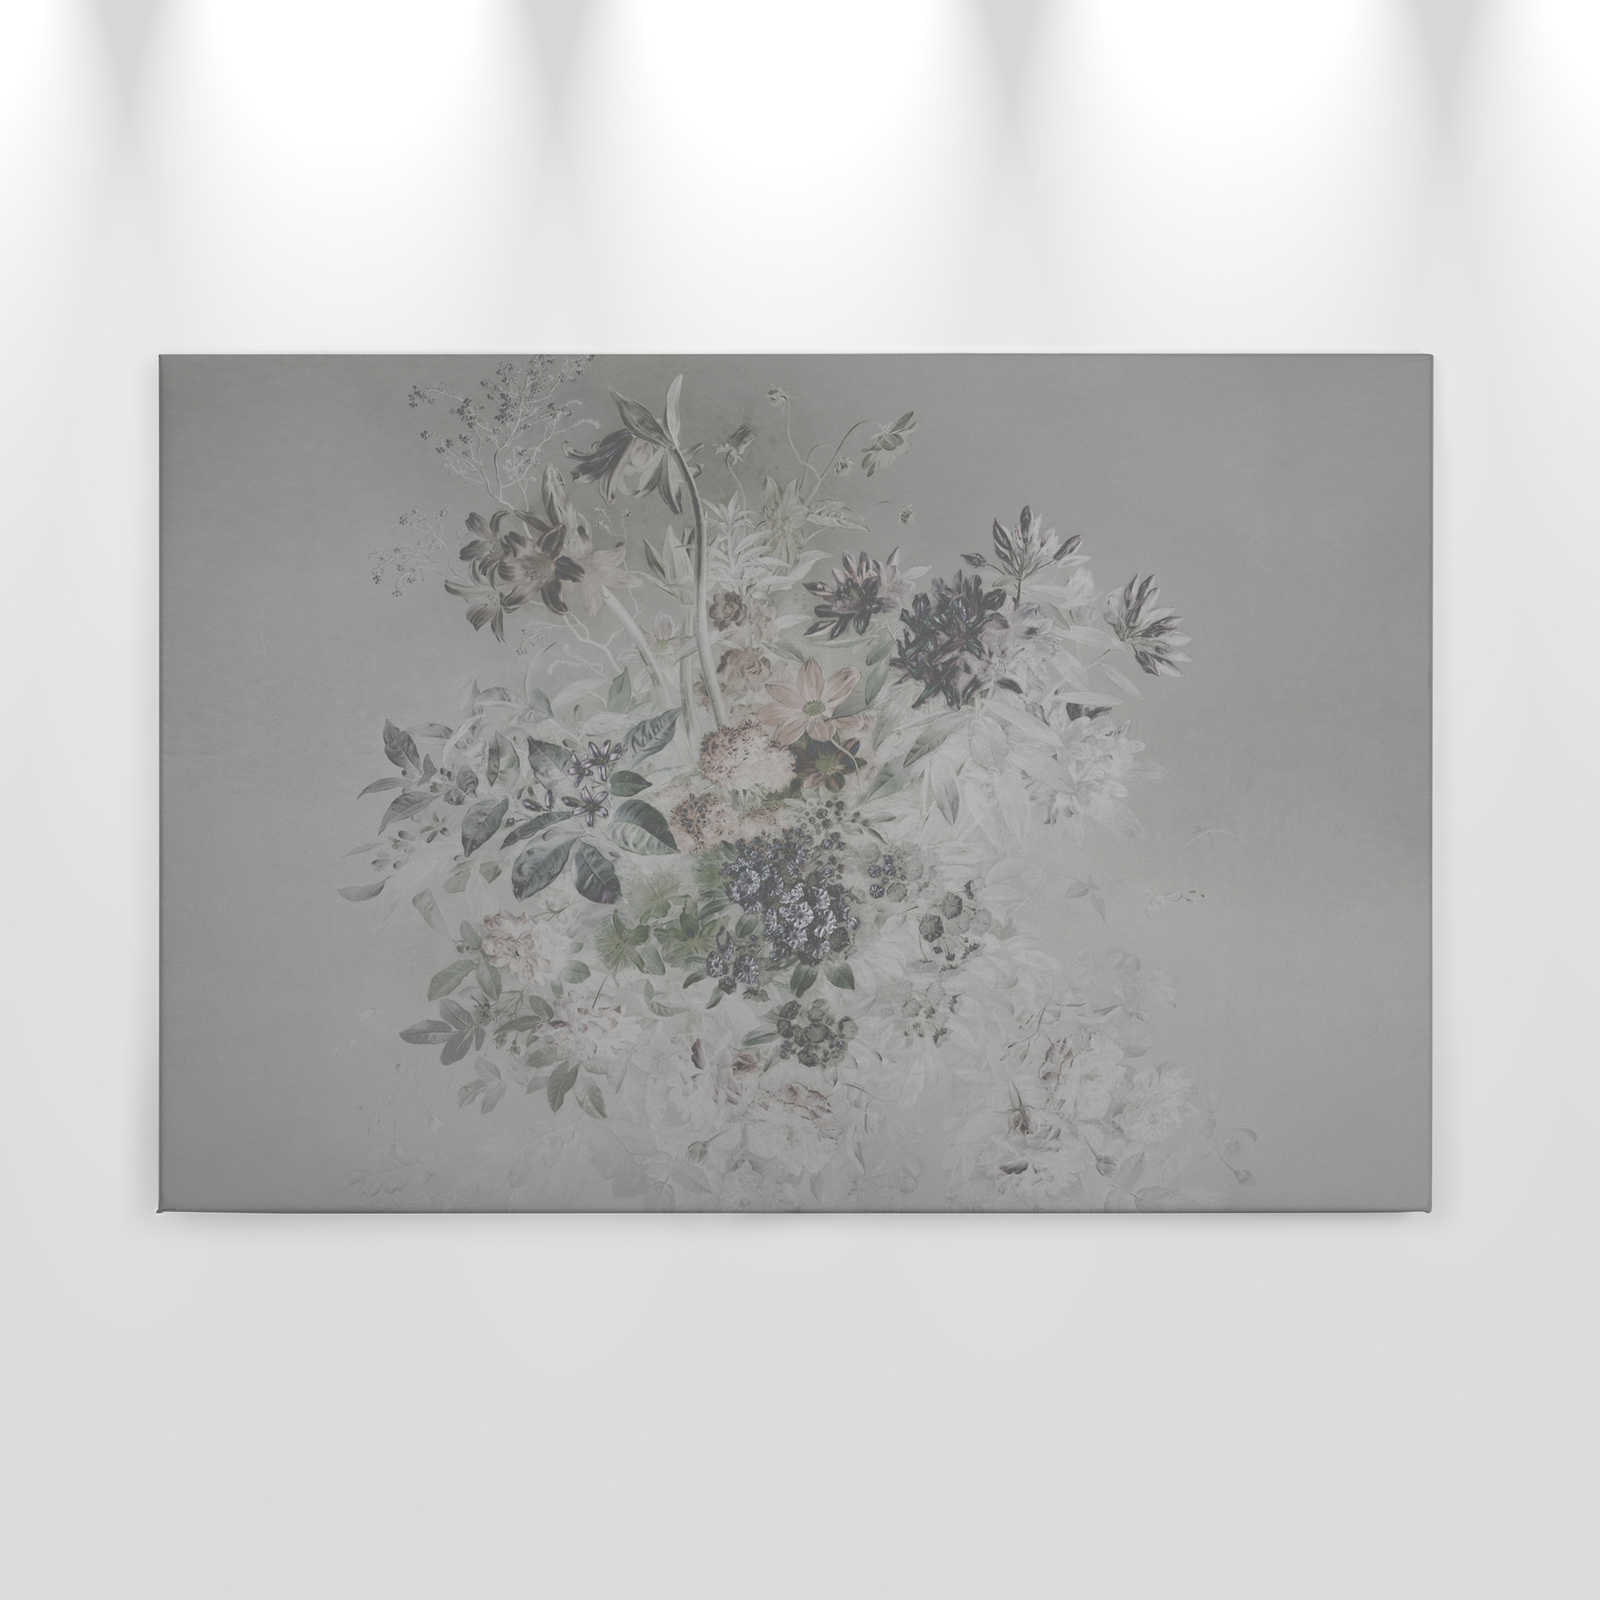             Quadro su tela con fiori romantici - 0,90 m x 0,60 m
        